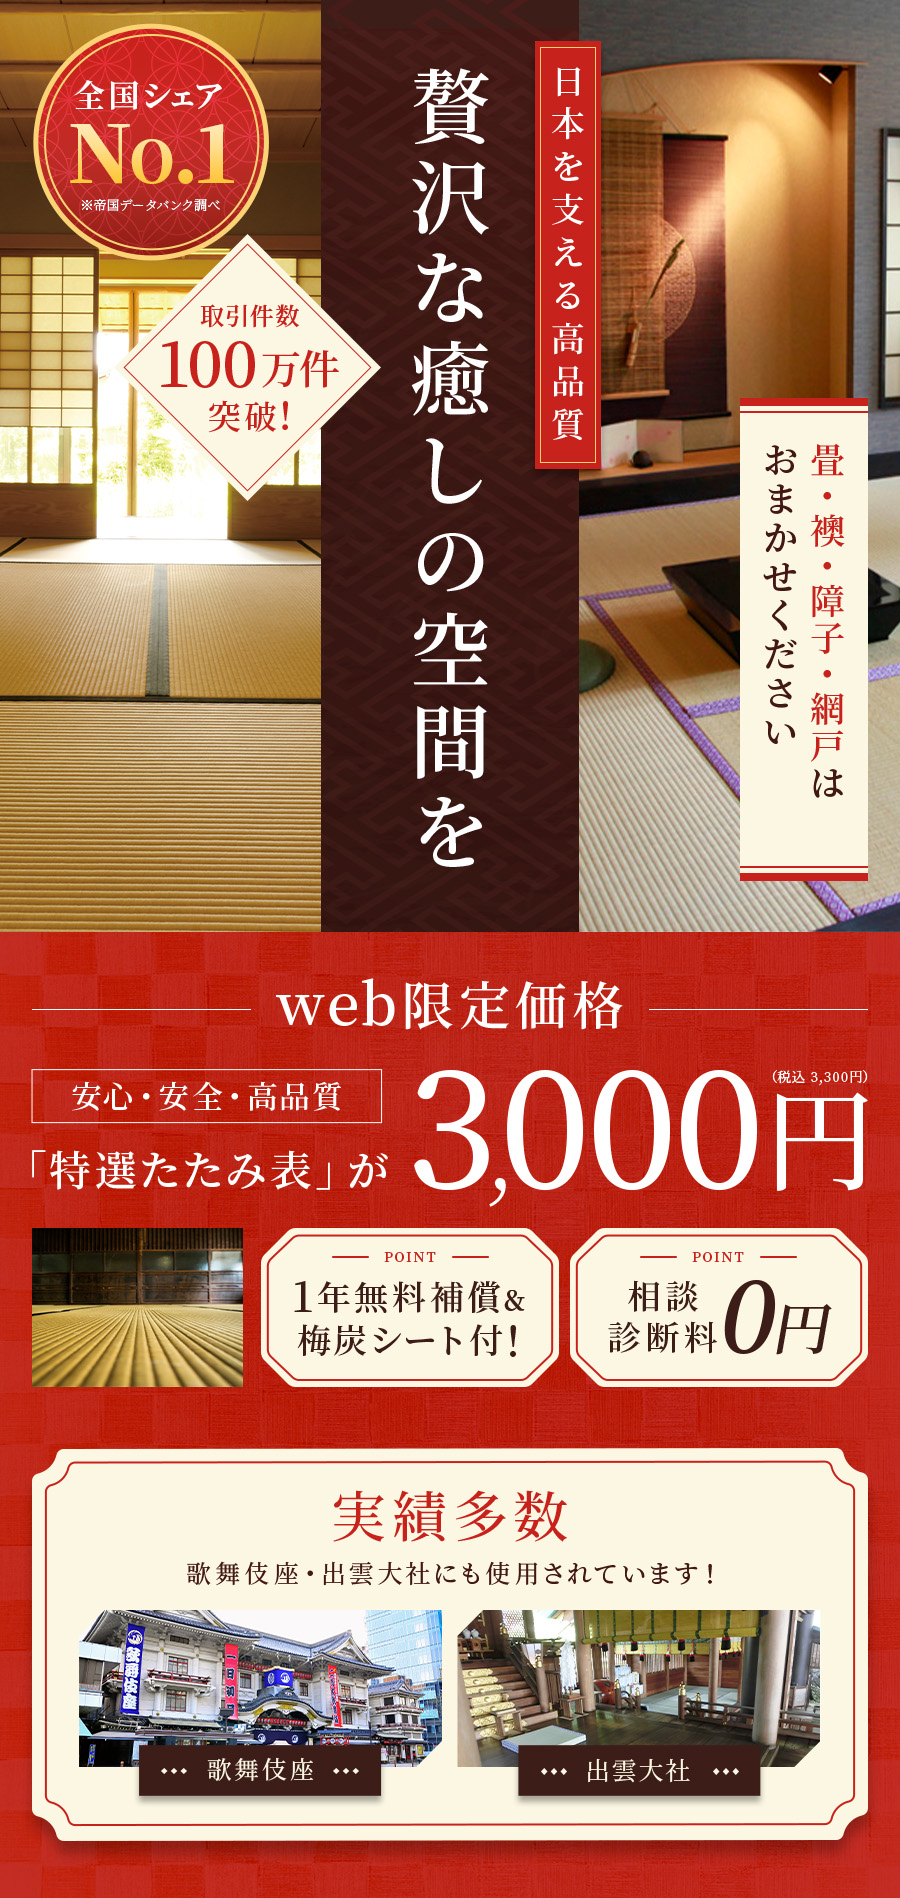 贅沢な癒しの空間を WEB限定価格3,000円